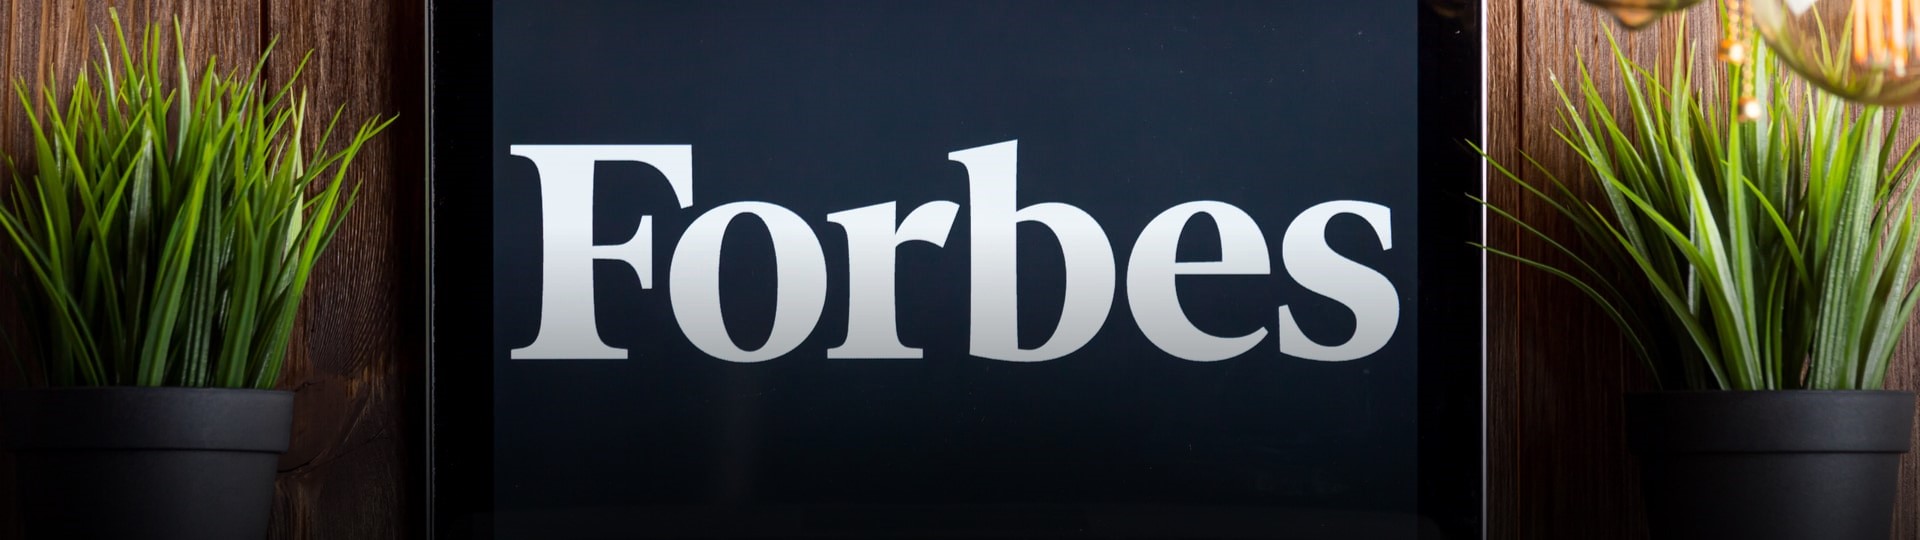 Vydavatel časopisu Forbes vstoupí na burzu fúzí se specializovanou firmou